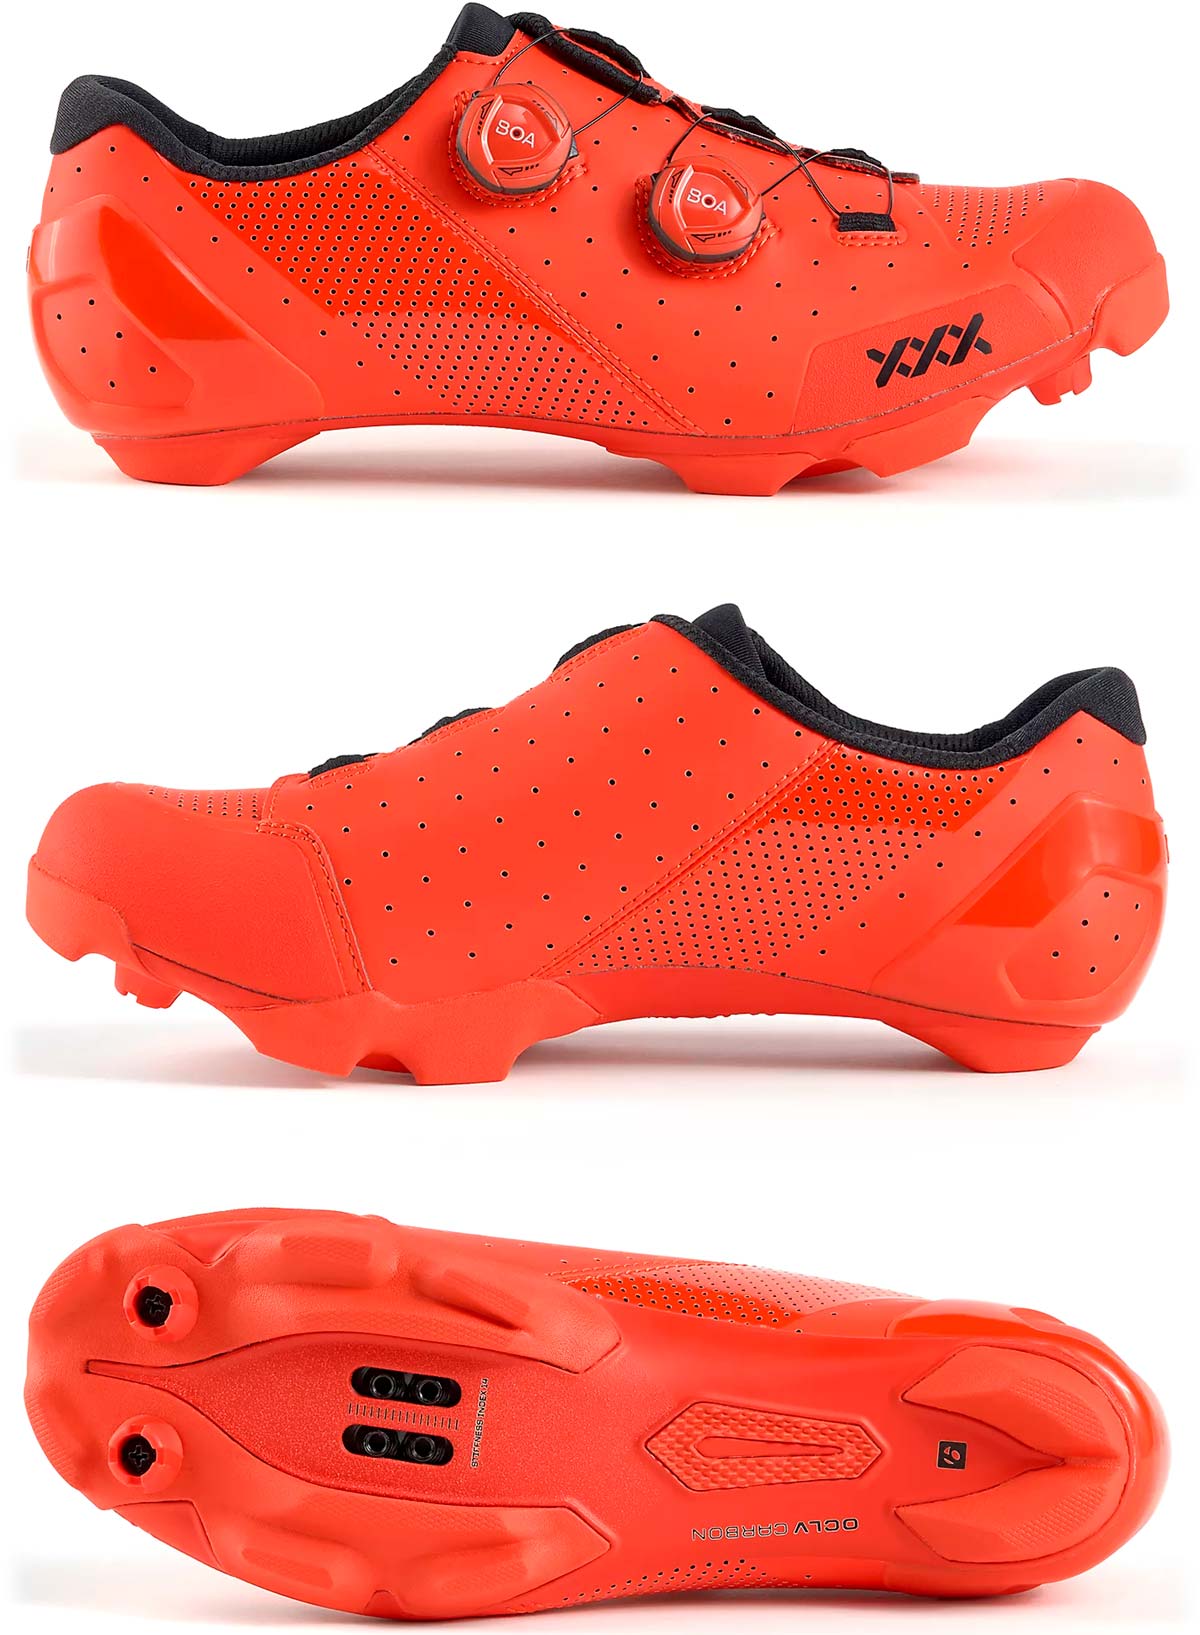 En TodoMountainBike: Bontrager presenta sus renovadas zapatillas XXX LTD, tope de gama para ciclistas de XC y CX